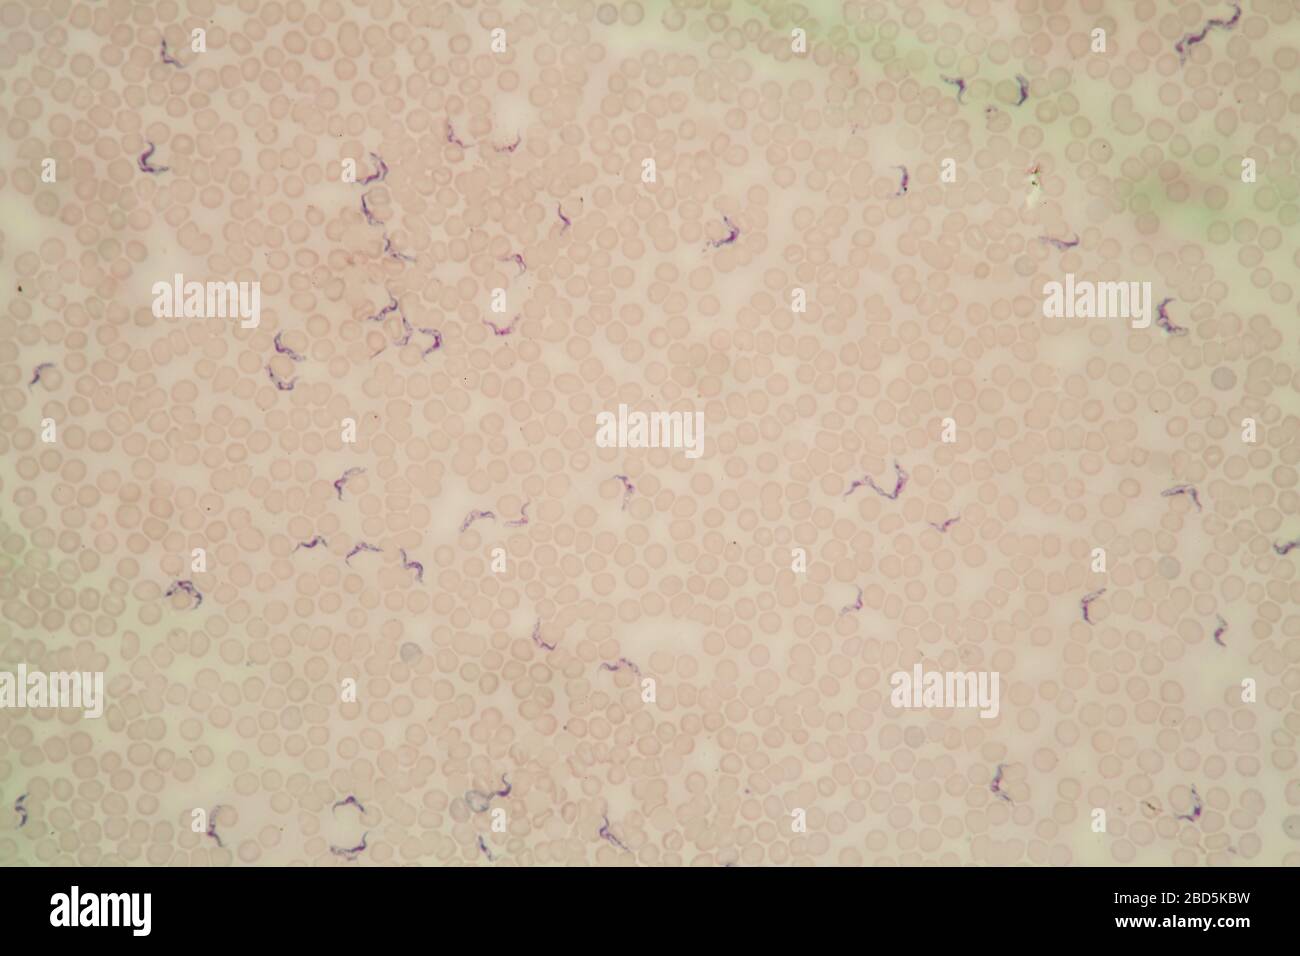 Trypanosomes des parasites de la maladie de Chagas dans le sang 400 fois Banque D'Images